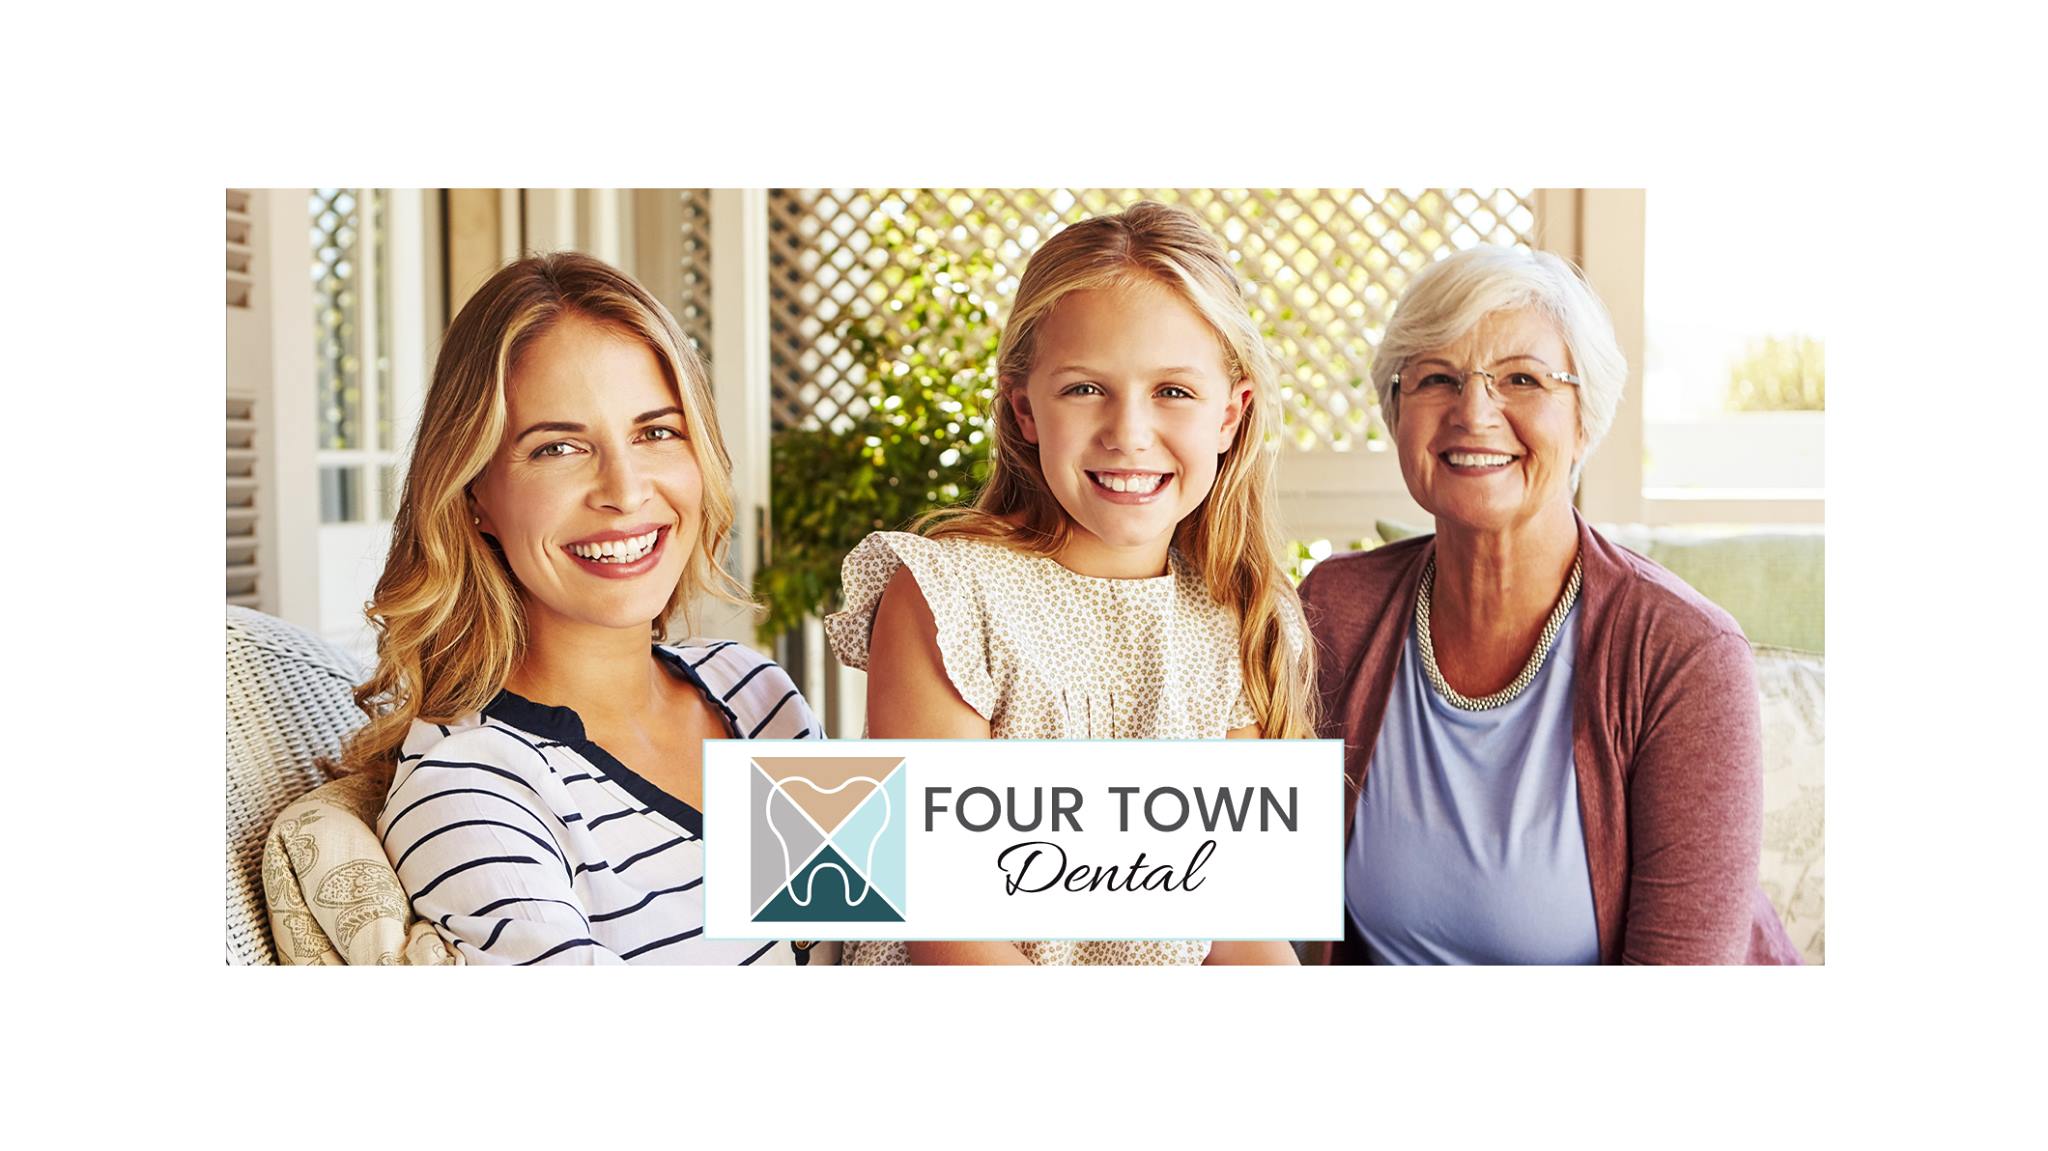 Four Town Dental